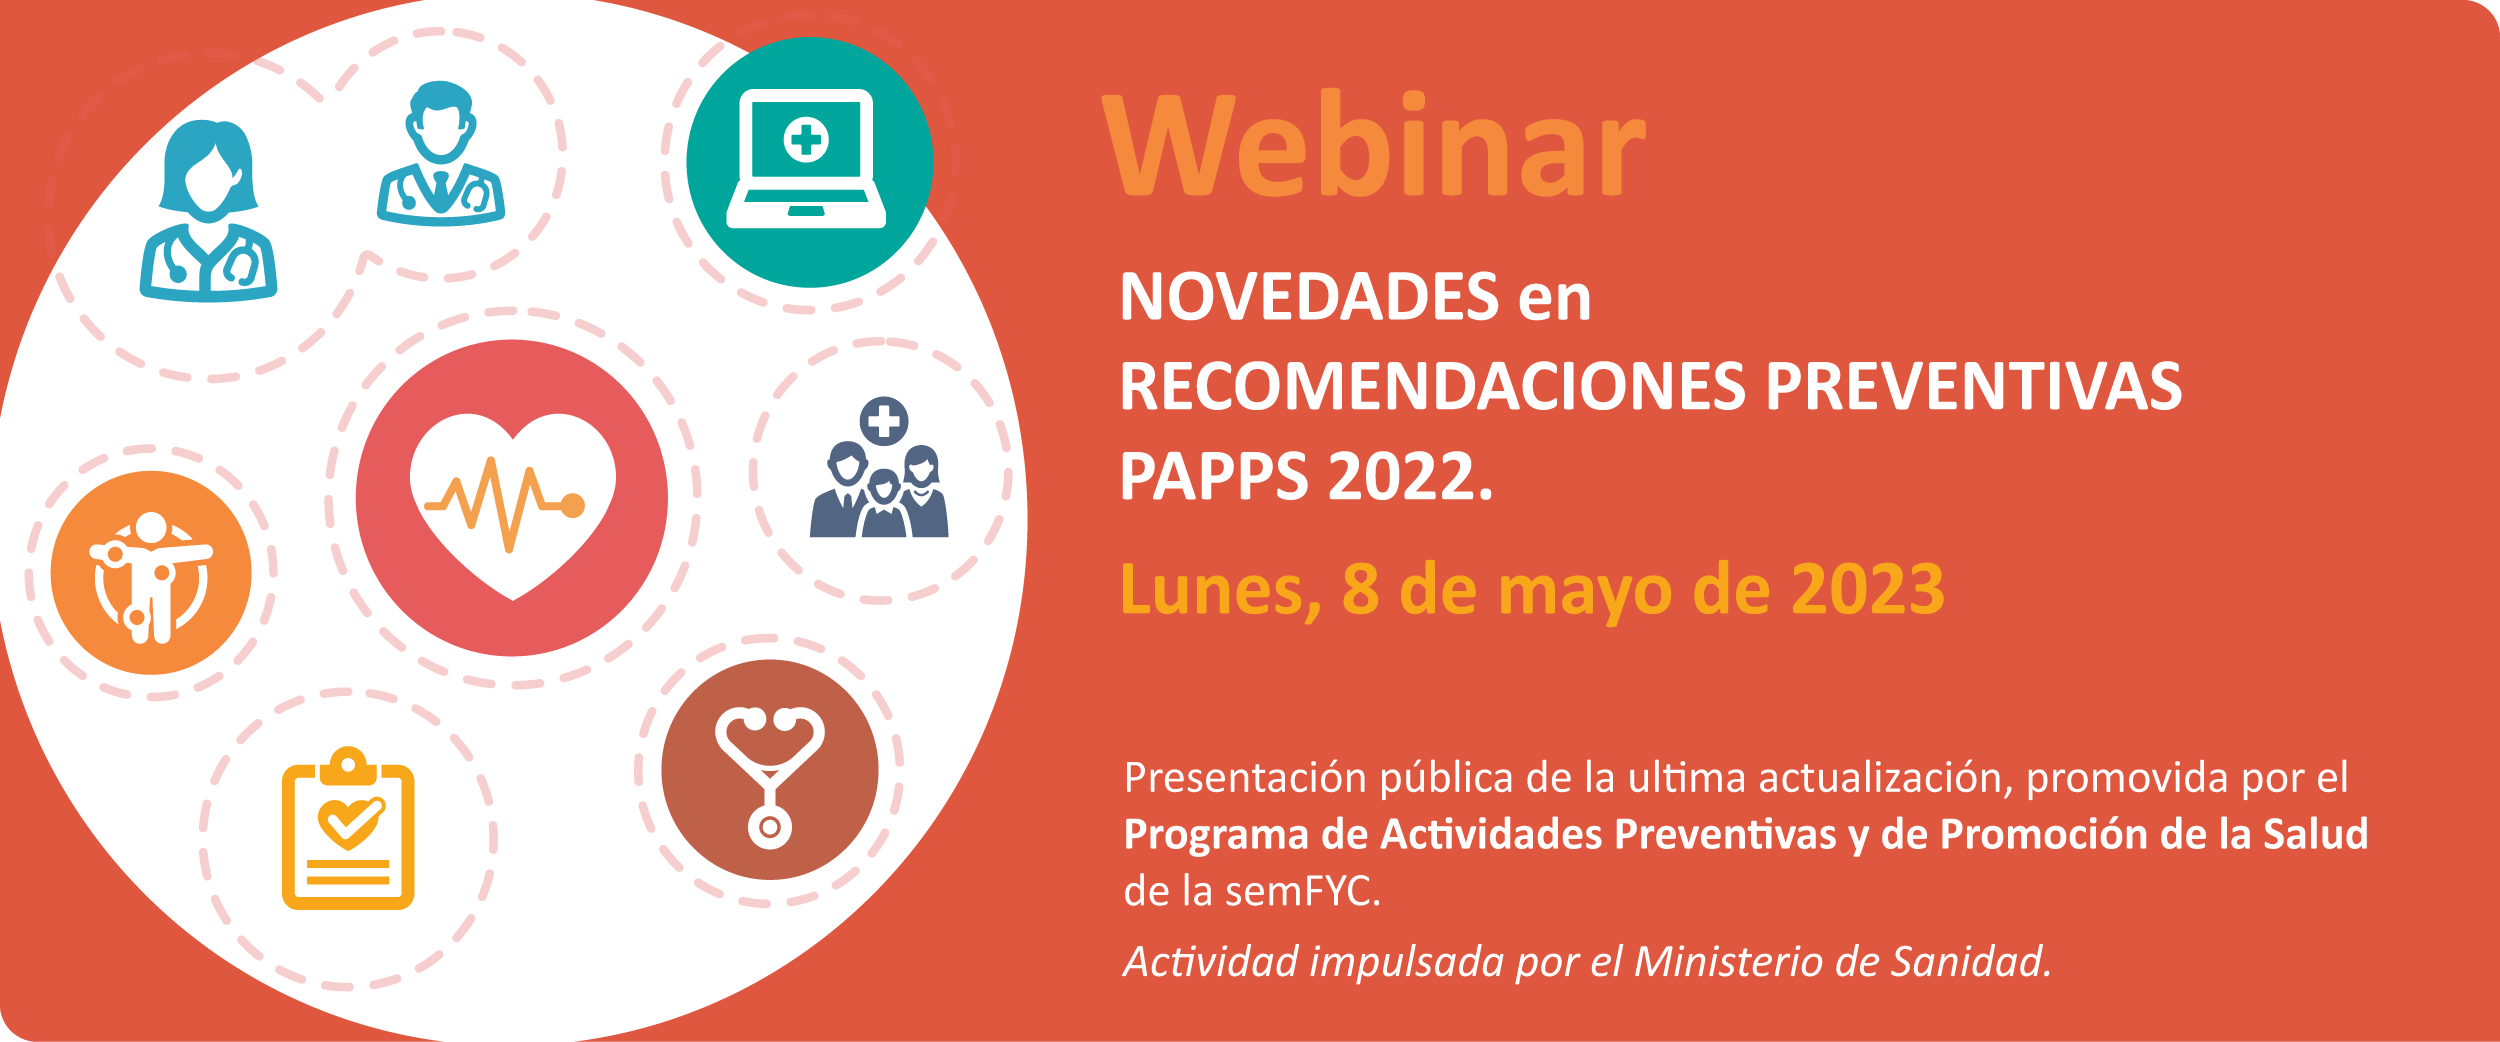 El PAPPS presenta sus recomendaciones de 2022 en un webinar el 8 de mayo con representación del Ministerio de Sanidad